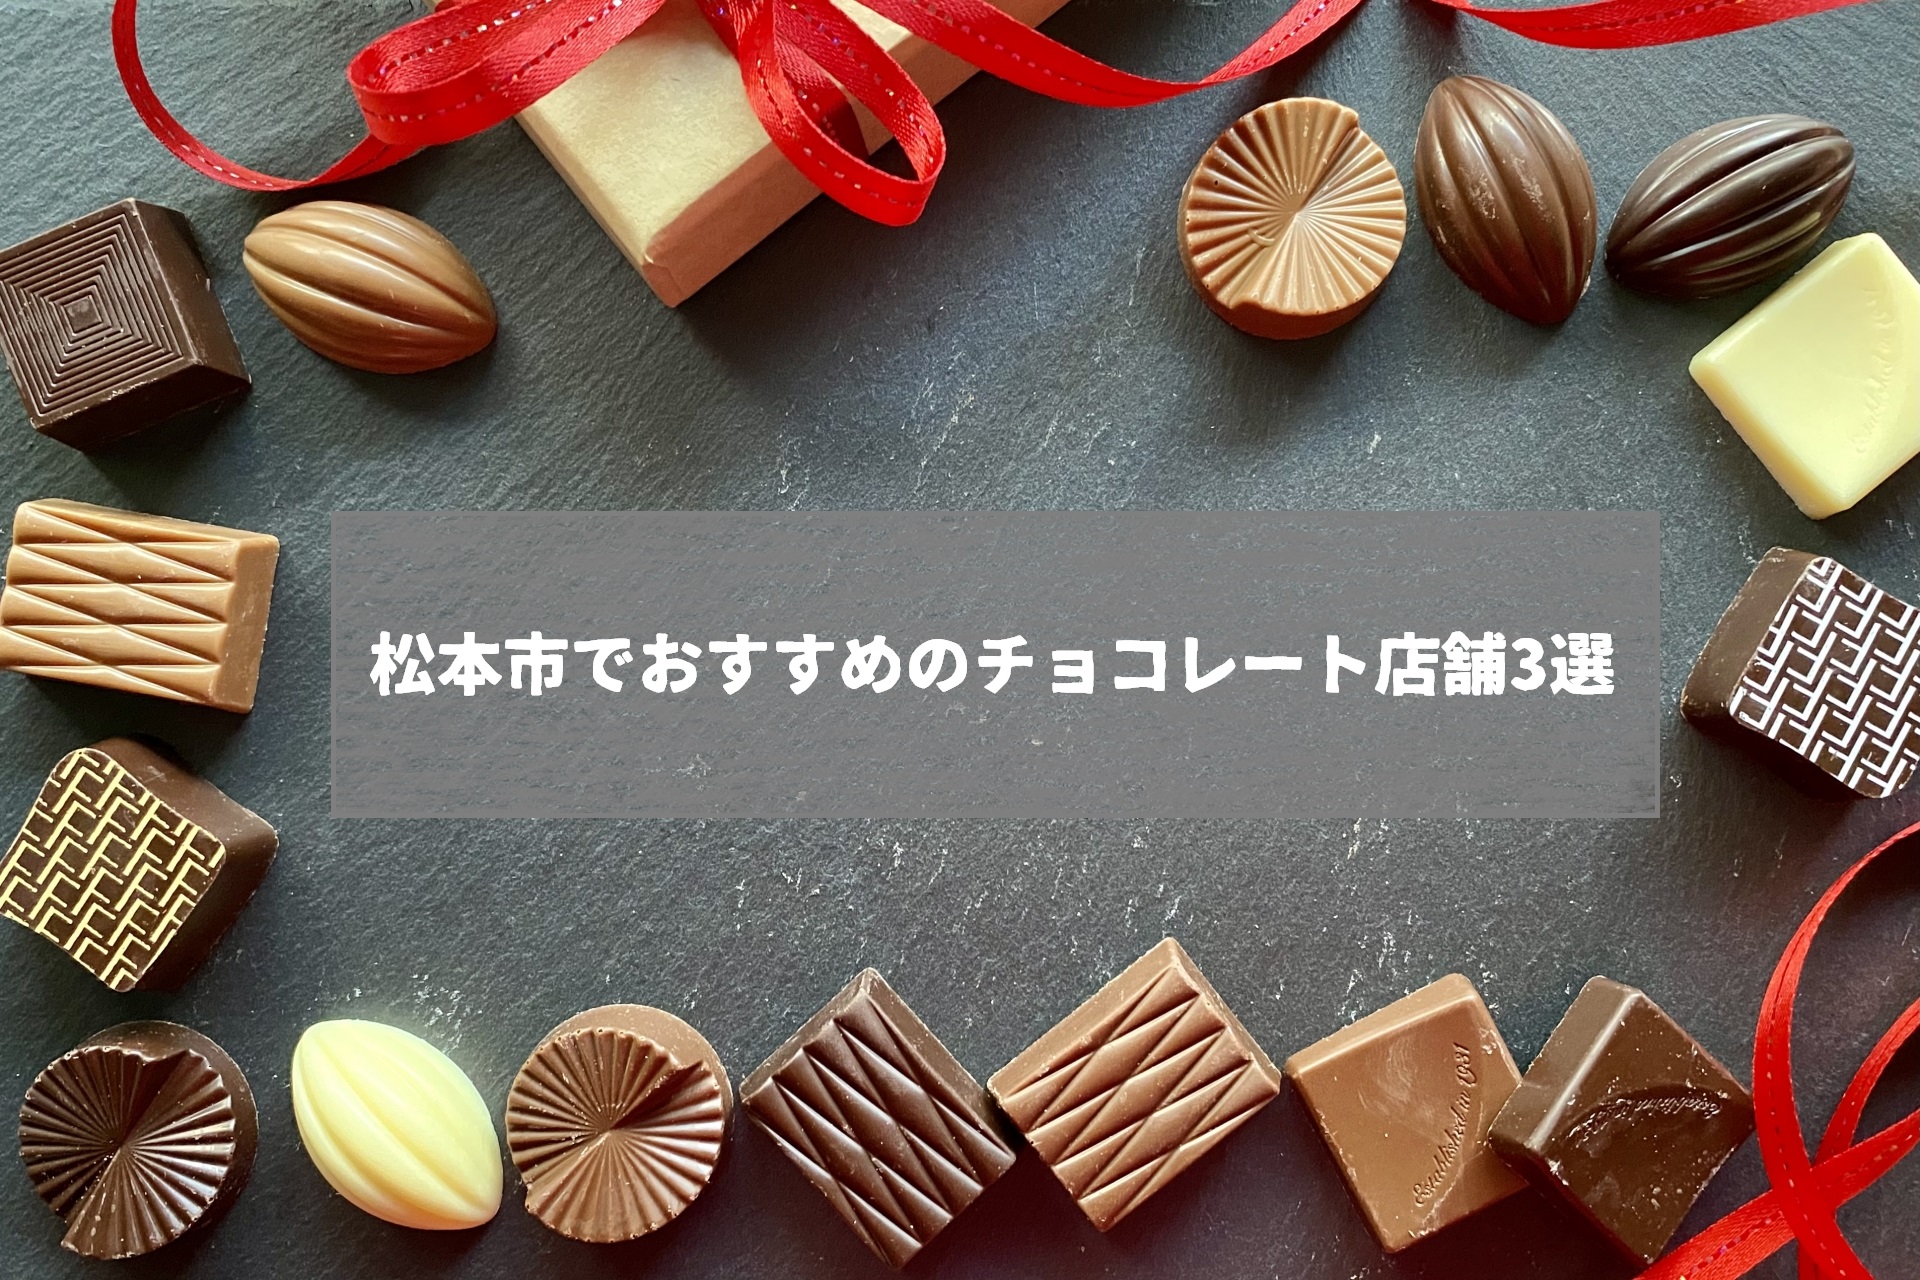 松本市でおすすめのチョコレート店舗3選。通販で人気のショップもまとめました。